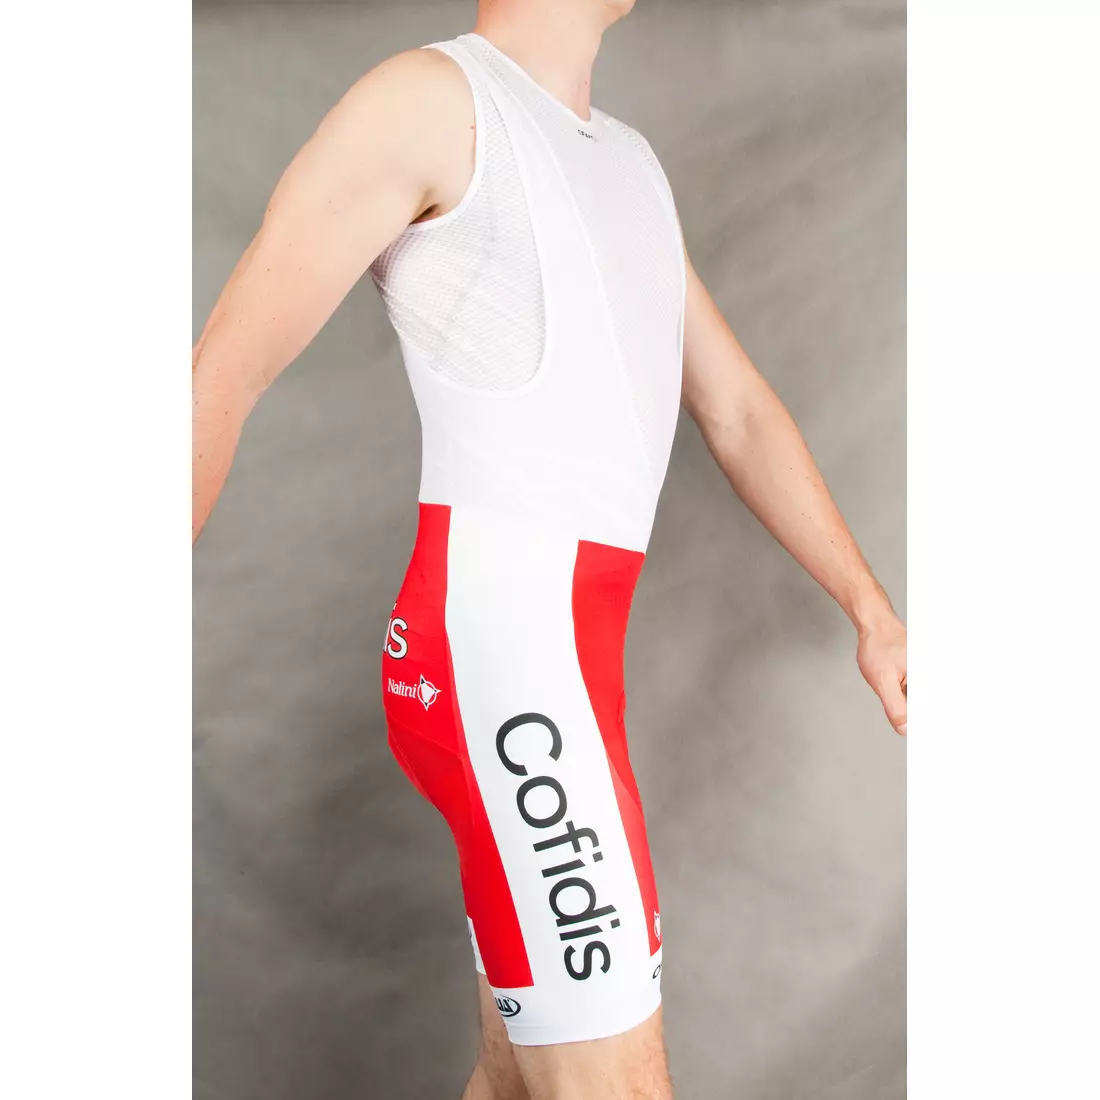 Pantaloni scurți pentru ciclism COFIDIS 2015